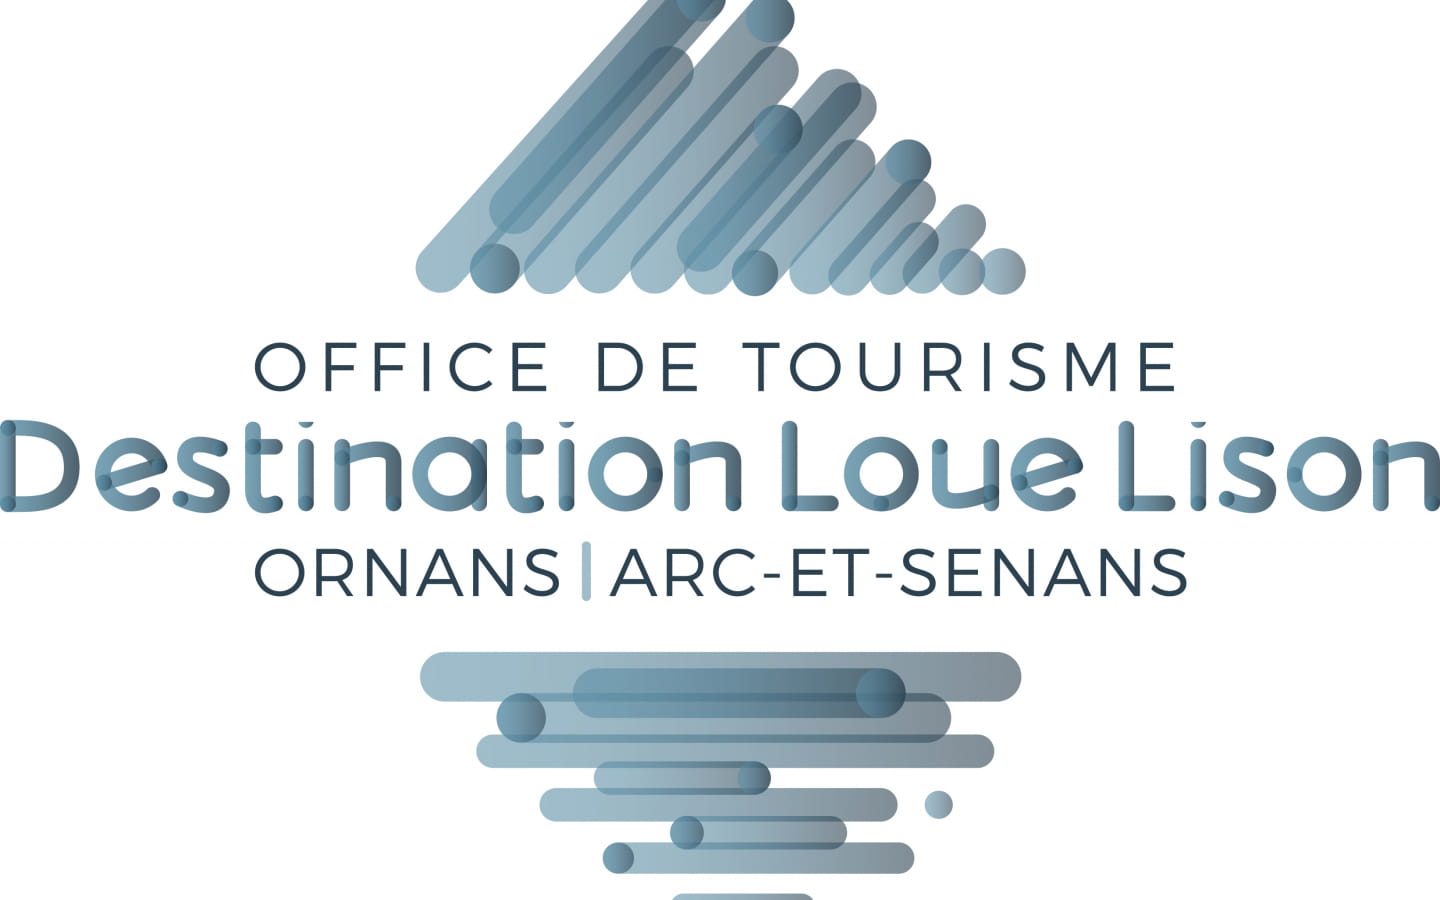 Office de Tourisme Destination Loue Lison